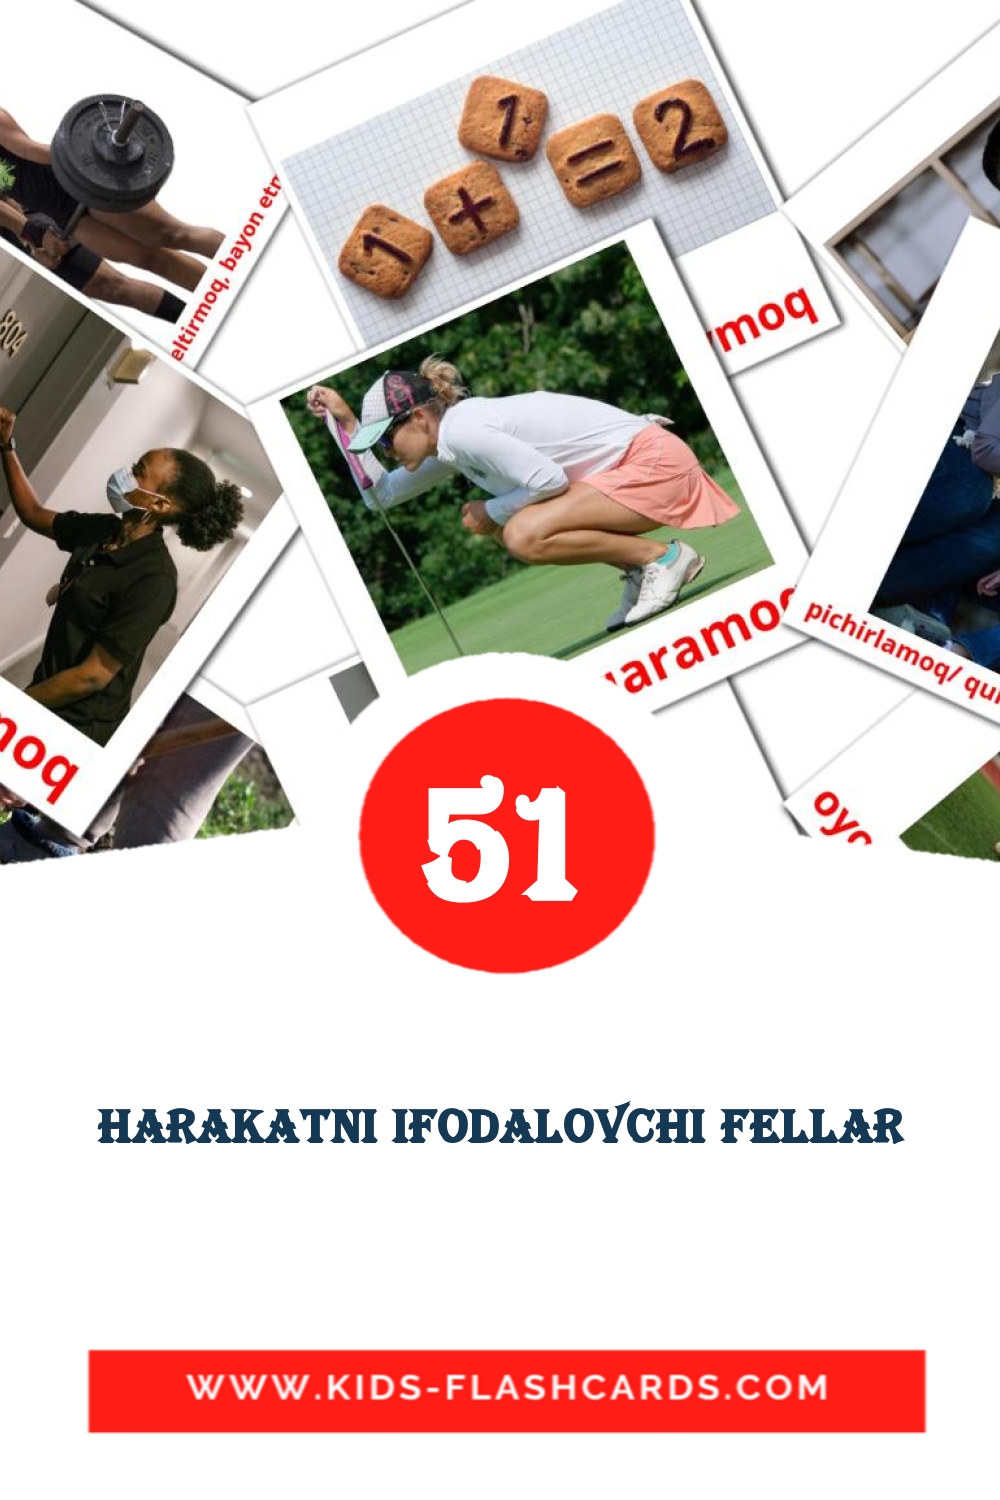 51 Harakatni ifodalovchi fellar Picture Cards for Kindergarden in uzbek